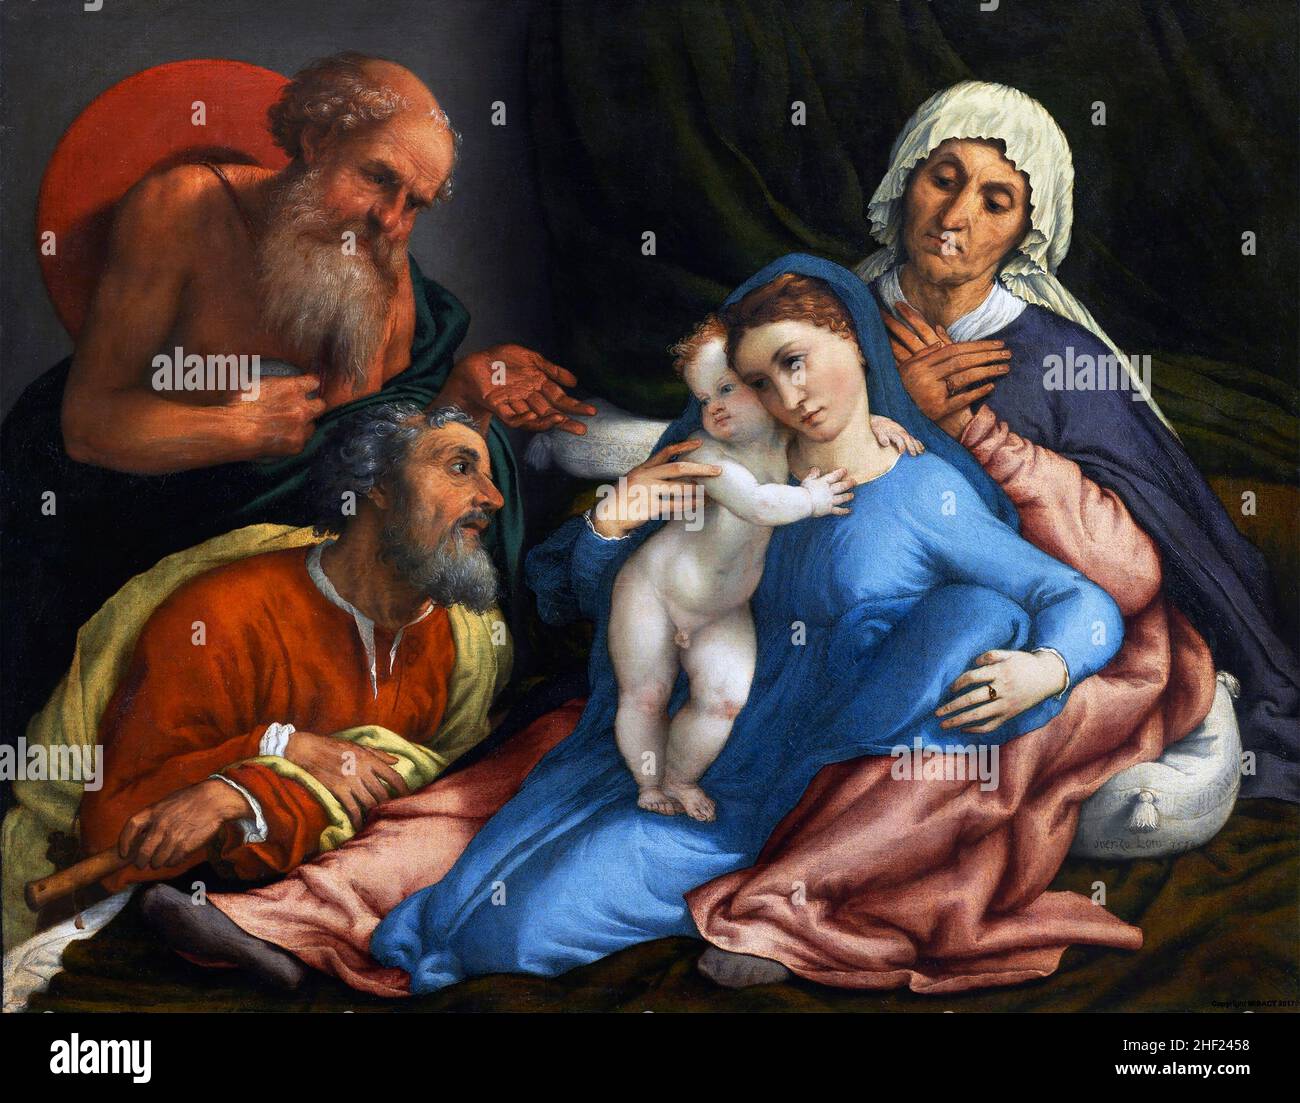 Sainte famille avec Saint Jérôme par Lorenzo Lotto (c.1480-1556), huile sur toile, 1534 Banque D'Images